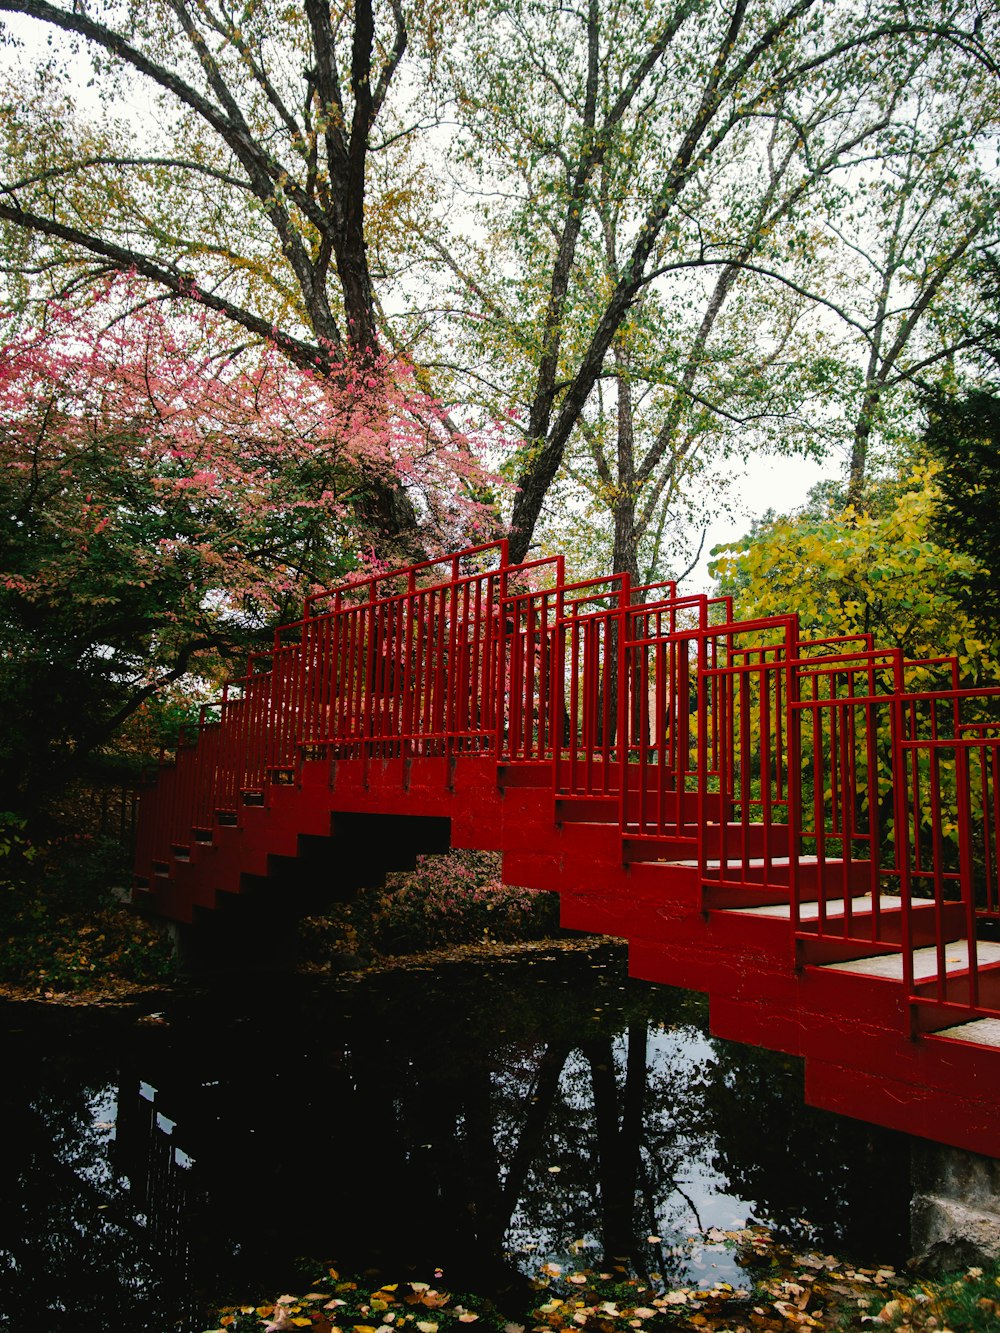 木々に囲まれた川に架かる赤い橋